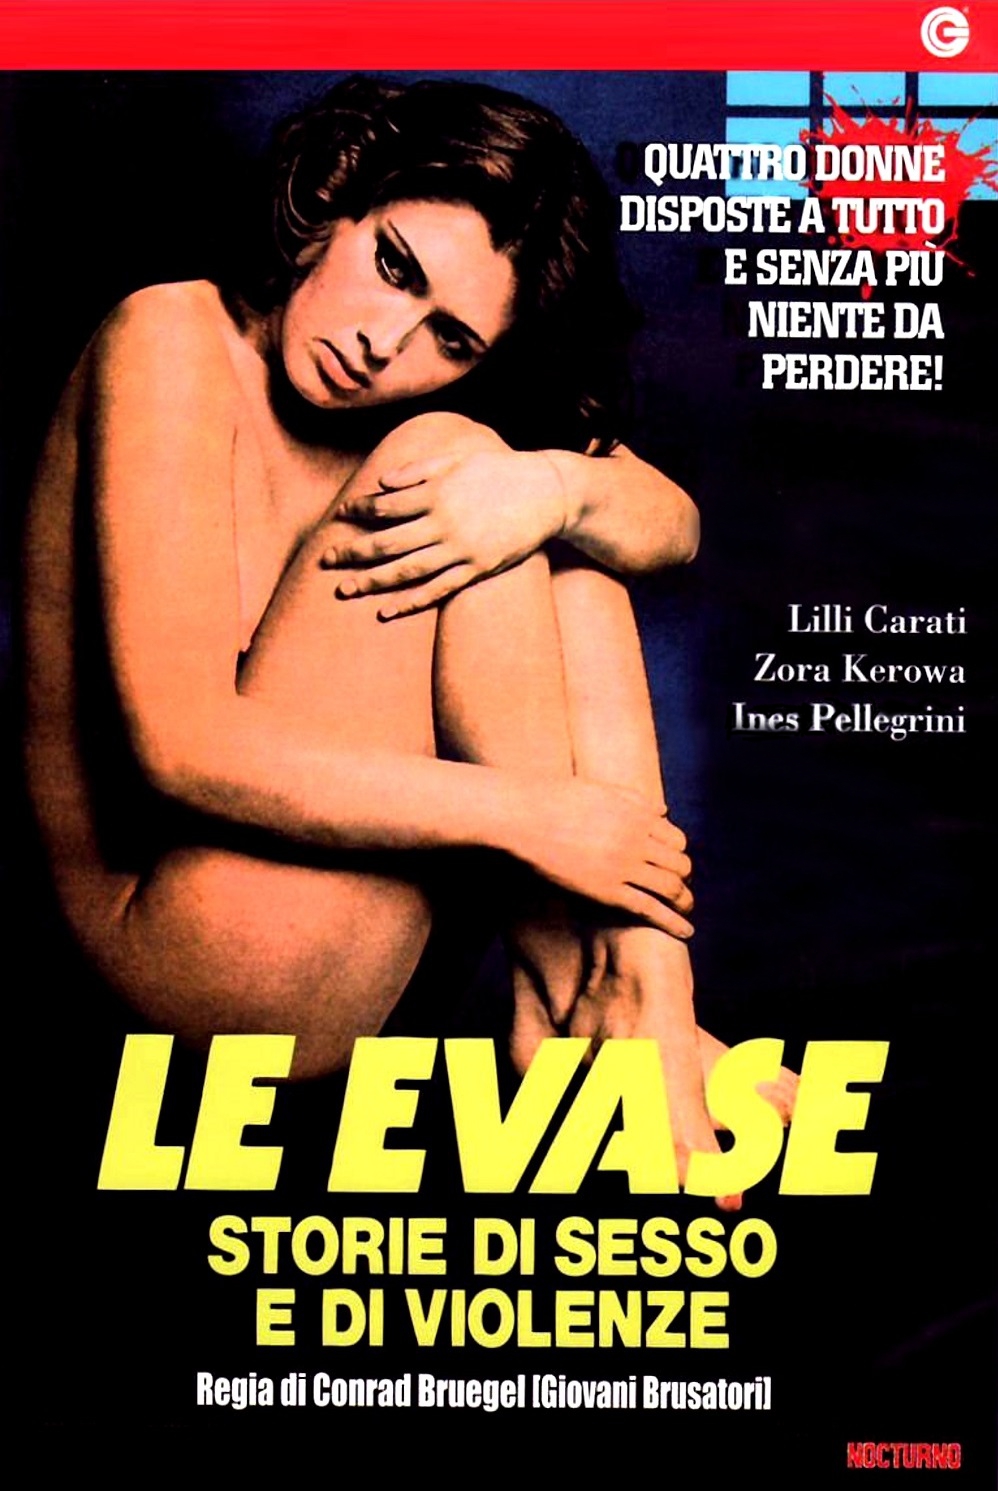 Le evase – Storie di sesso e di violenze (1978)